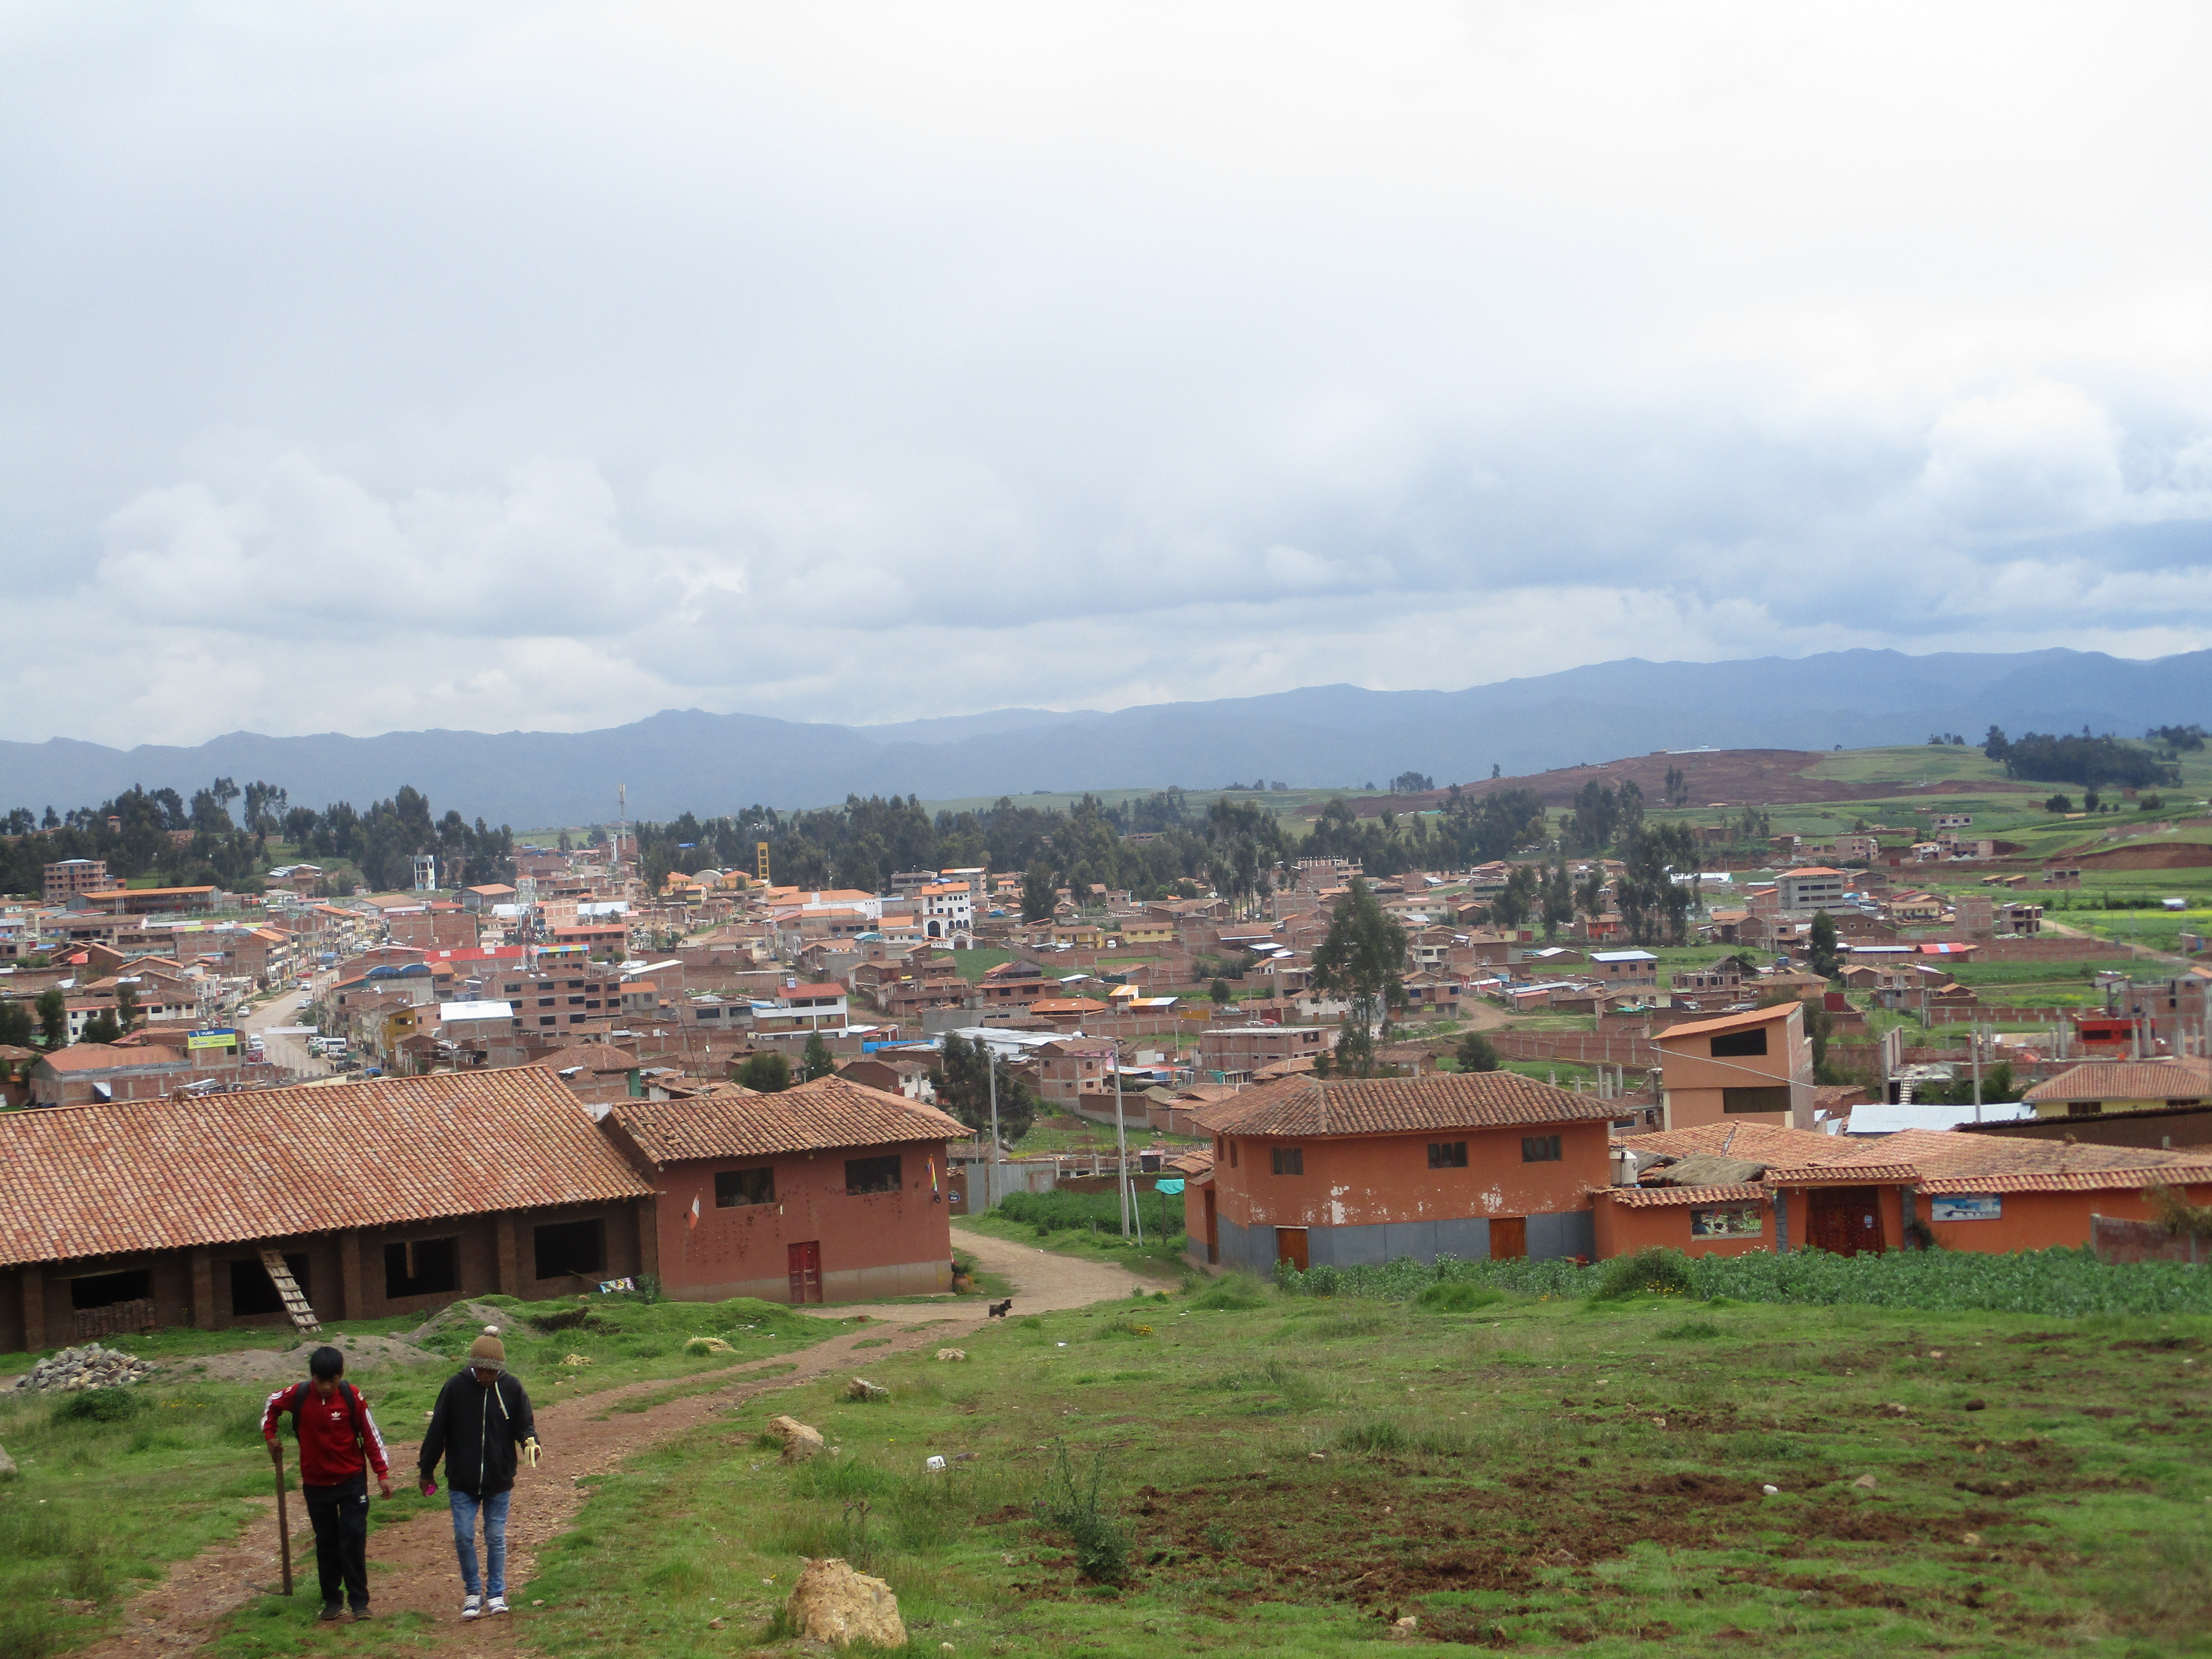 The urban landscape of Chinchero, 2019.